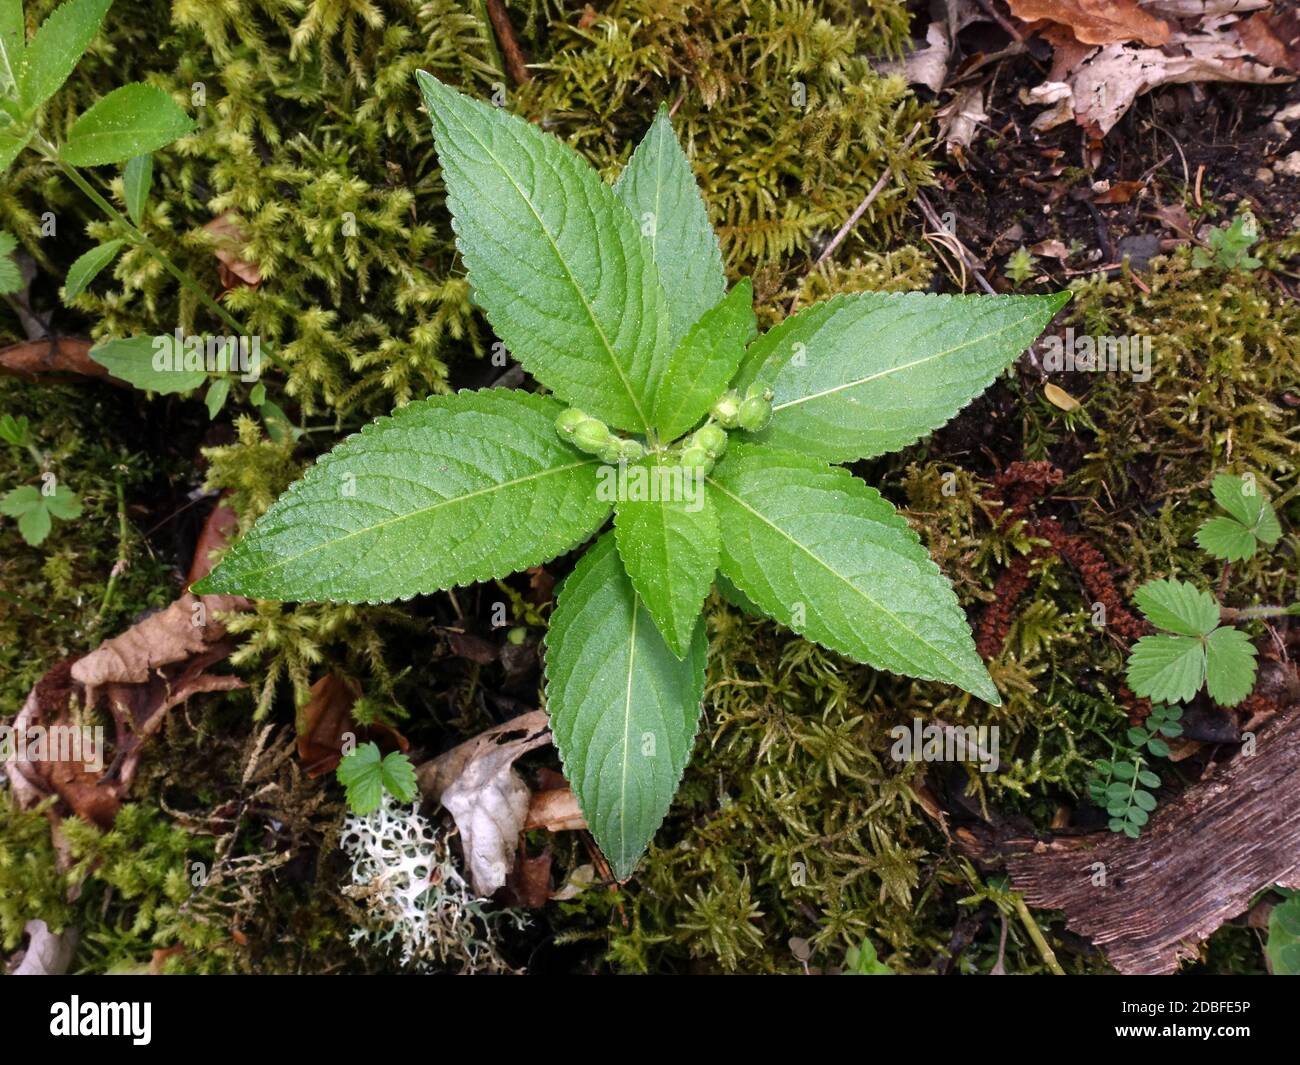 Wald-Bingelkraut (Mercurialis perennis), junge Pflanze mit Blütenknospen, Üxheim, Rheinland-Pfalz,Deutschland Stock Photo